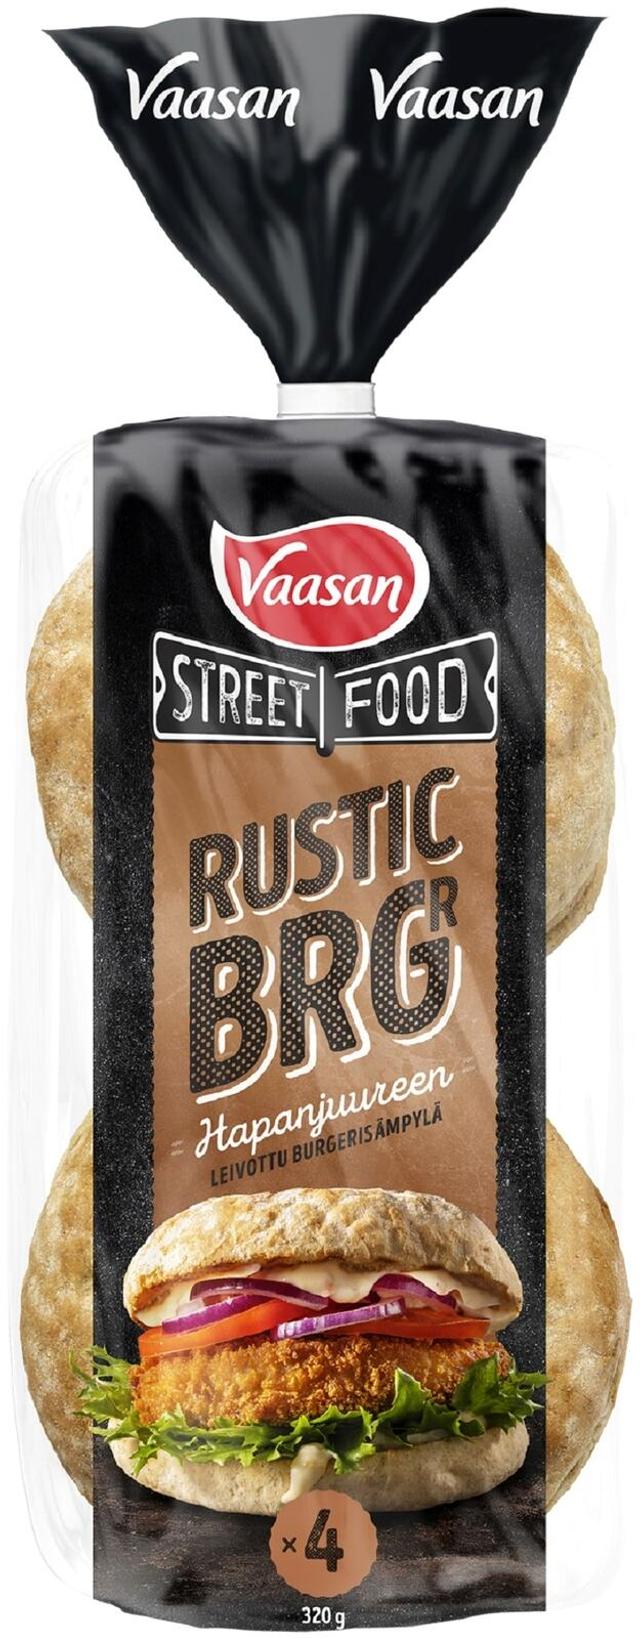 Vaasan Street Food Rustic BRGR 320g 4 kpl Hapanjuuren leivottu hampurilaissämpylä